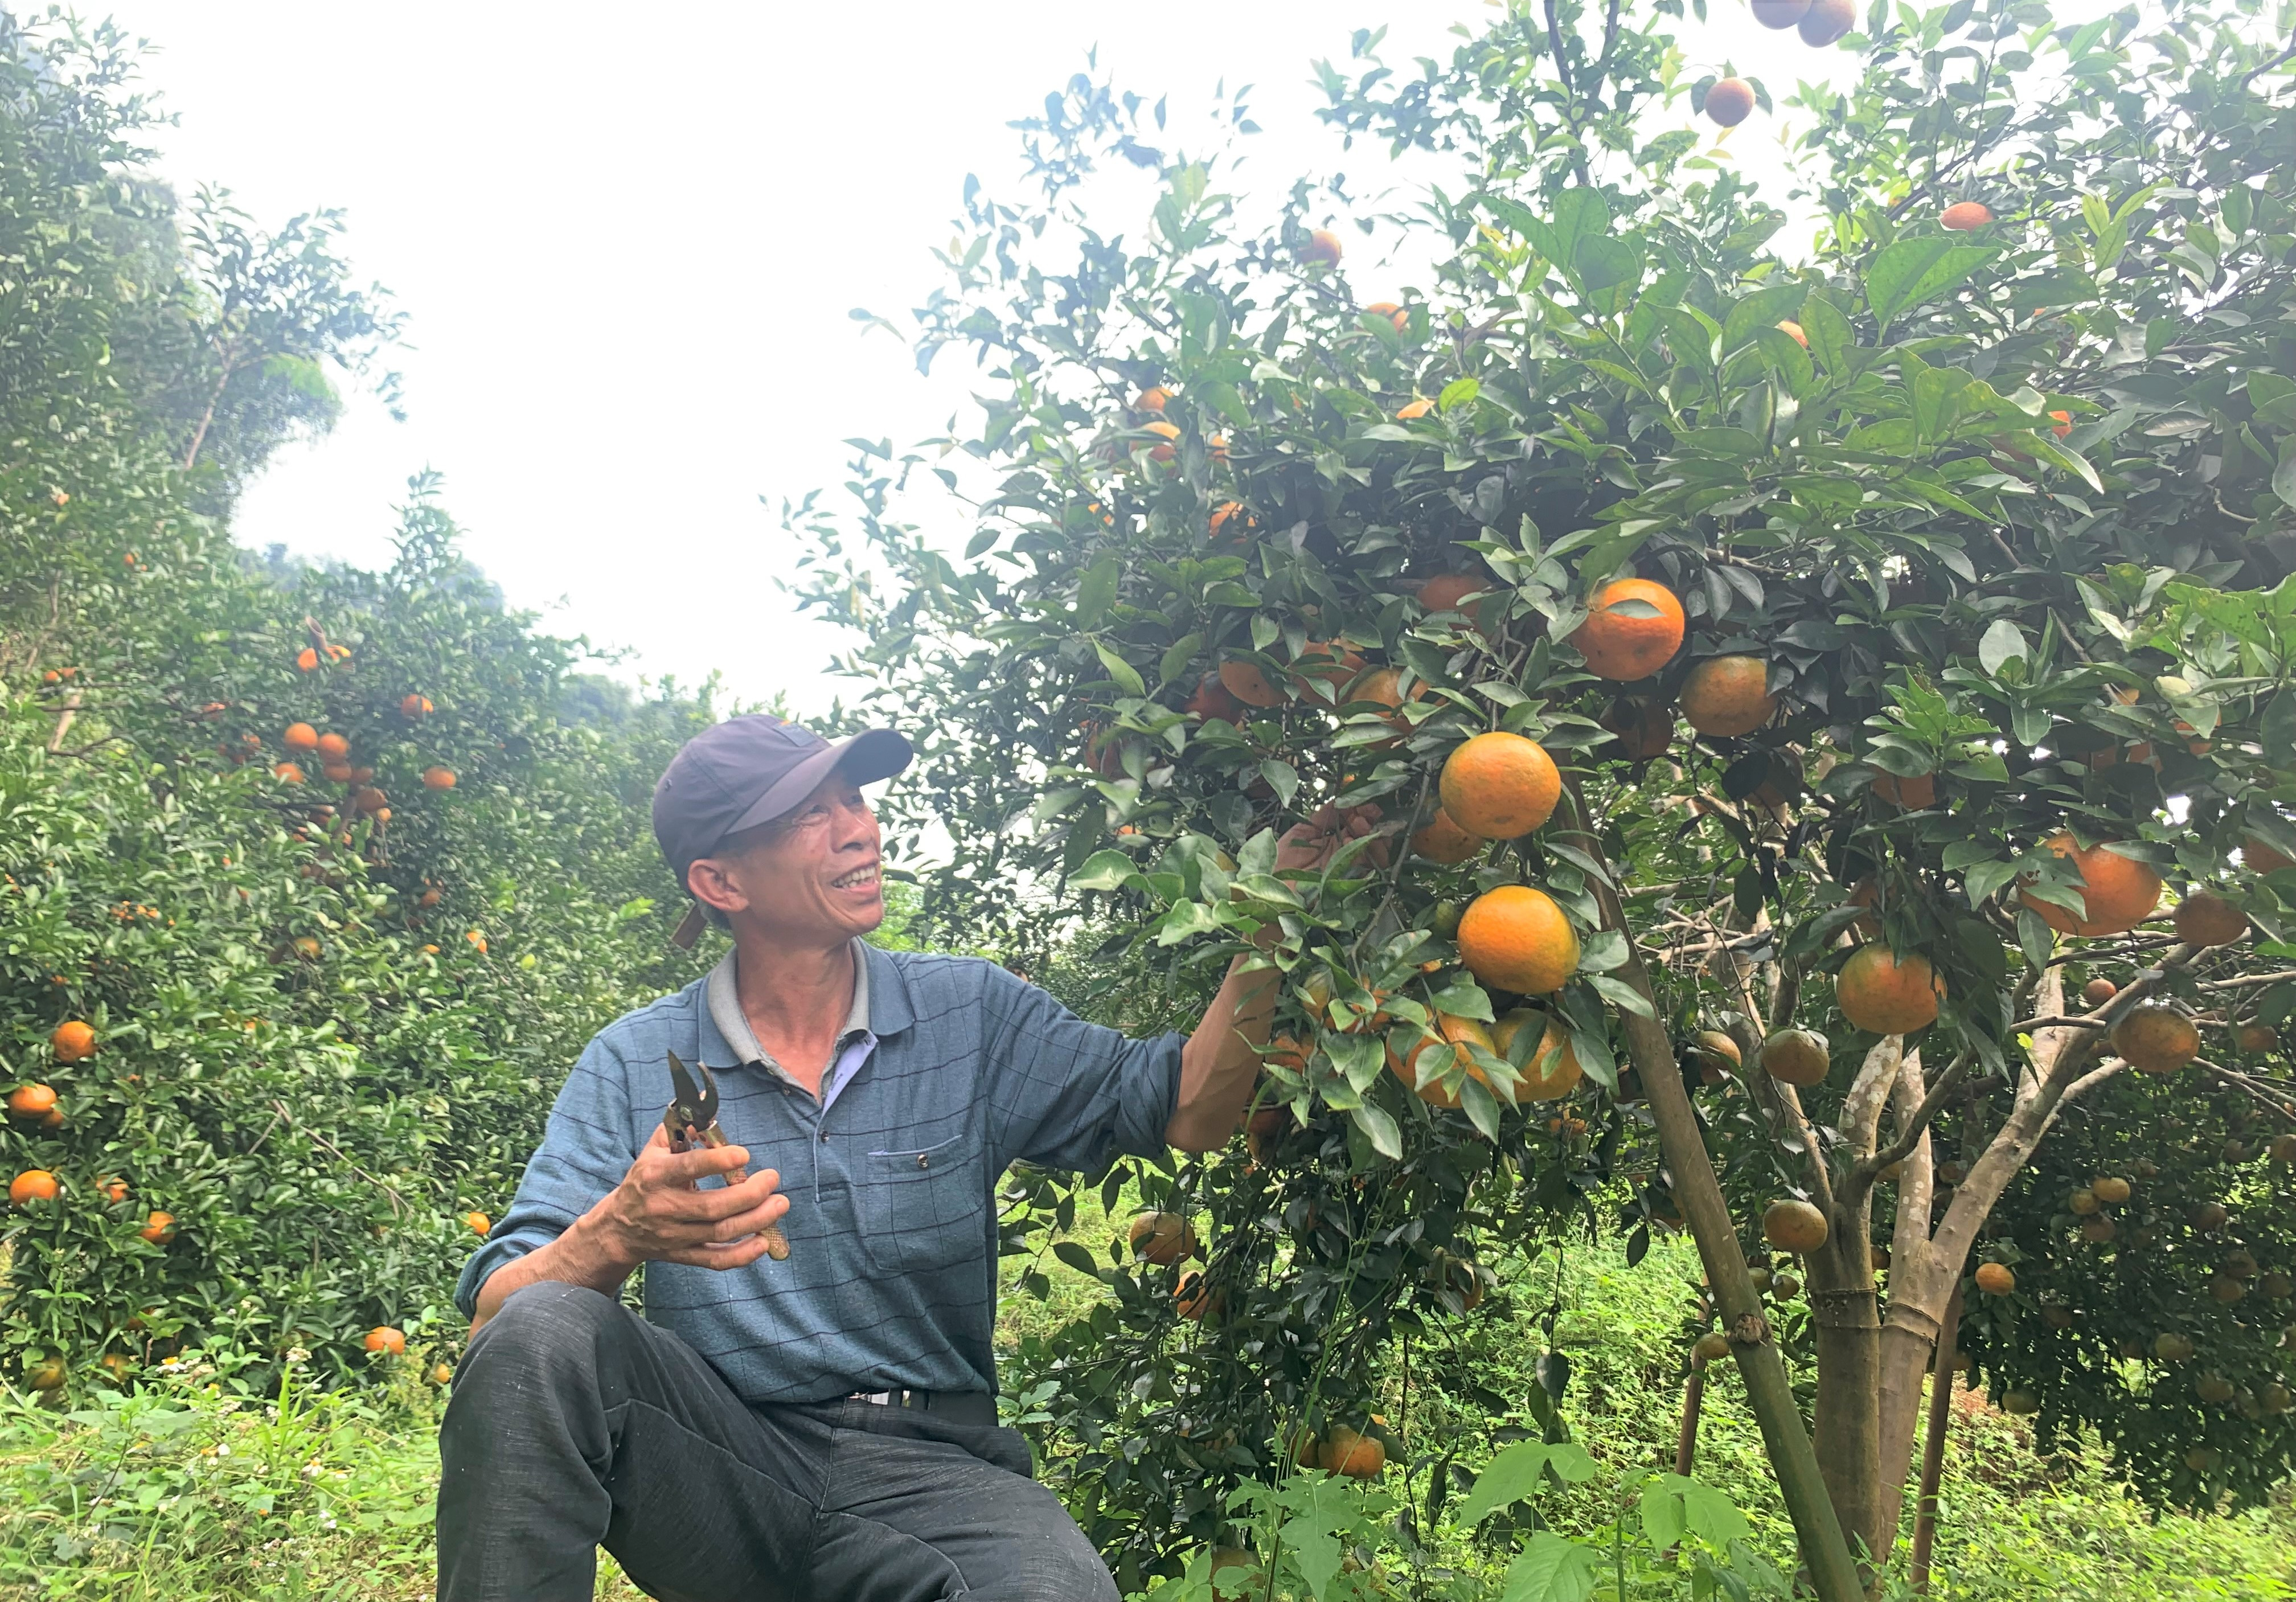 Thời điểm này gia đình ông Trần Văn Hải ở thôn 2 xã Hội Sơn đang thu hoạch những trái cam bù Kim Nhan vàng óng cuối mùa để kịp giao cho khách đặt. Ảnh Thái Hiền